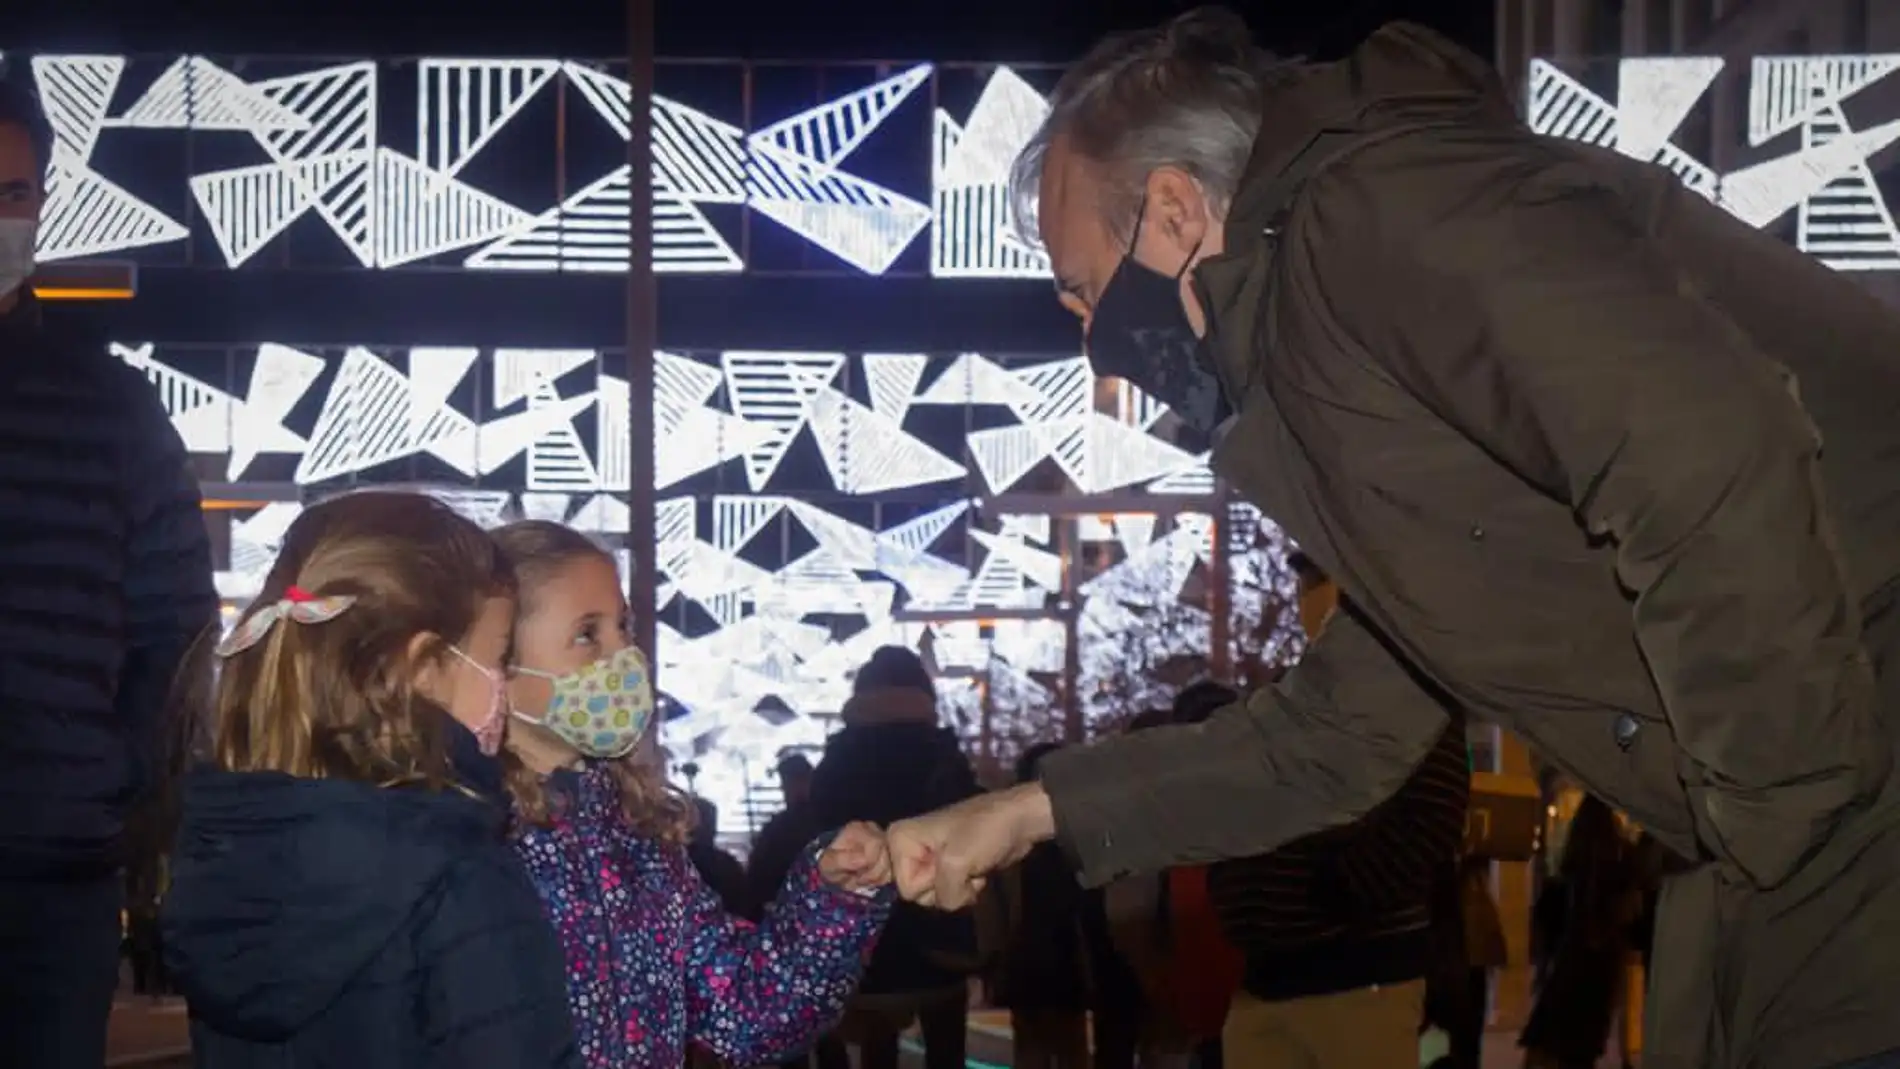 El alcalde, Jorge Azcón, en el encendido luces de navidad Zaragoza 2020